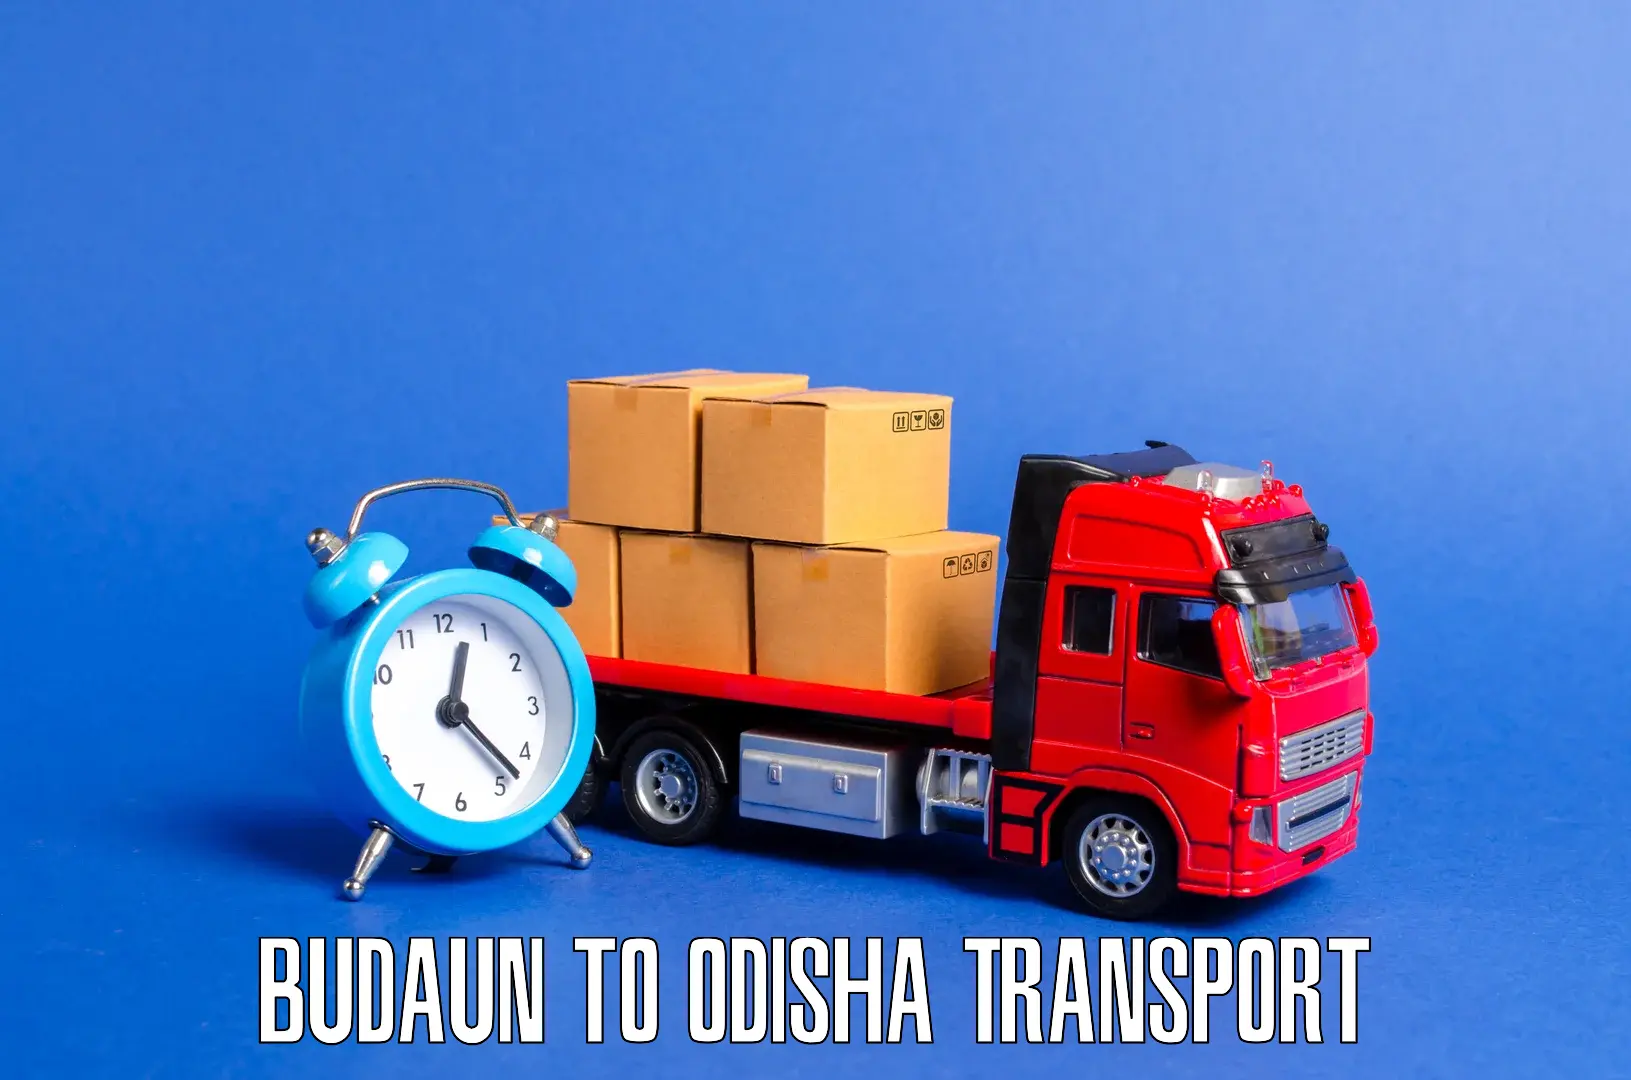 Lorry transport service Budaun to Jashipur